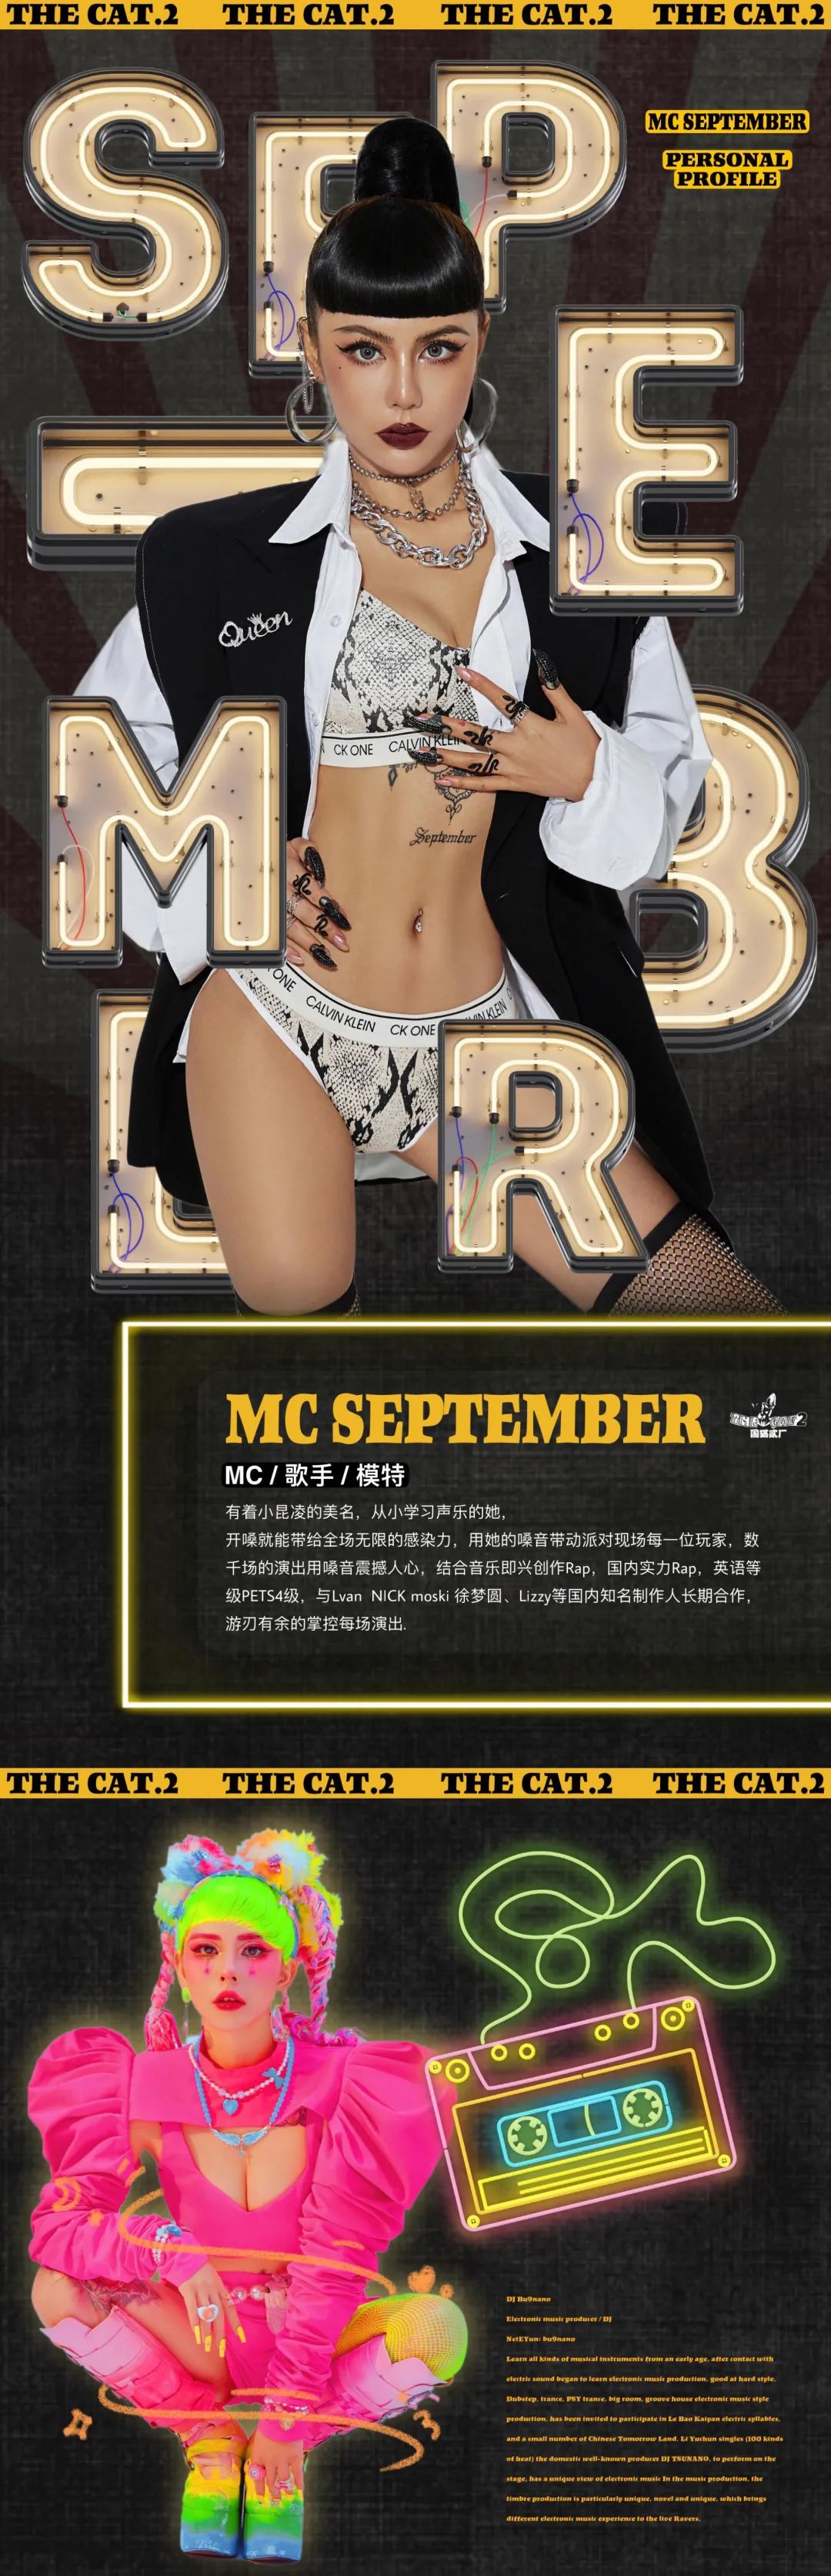 2021/09/09 | X-MUSE CLUB | THE CAT 2-国猫贰厂 拒绝平庸 燃烧激情-成县缪斯酒吧/X-MUSE CLUB